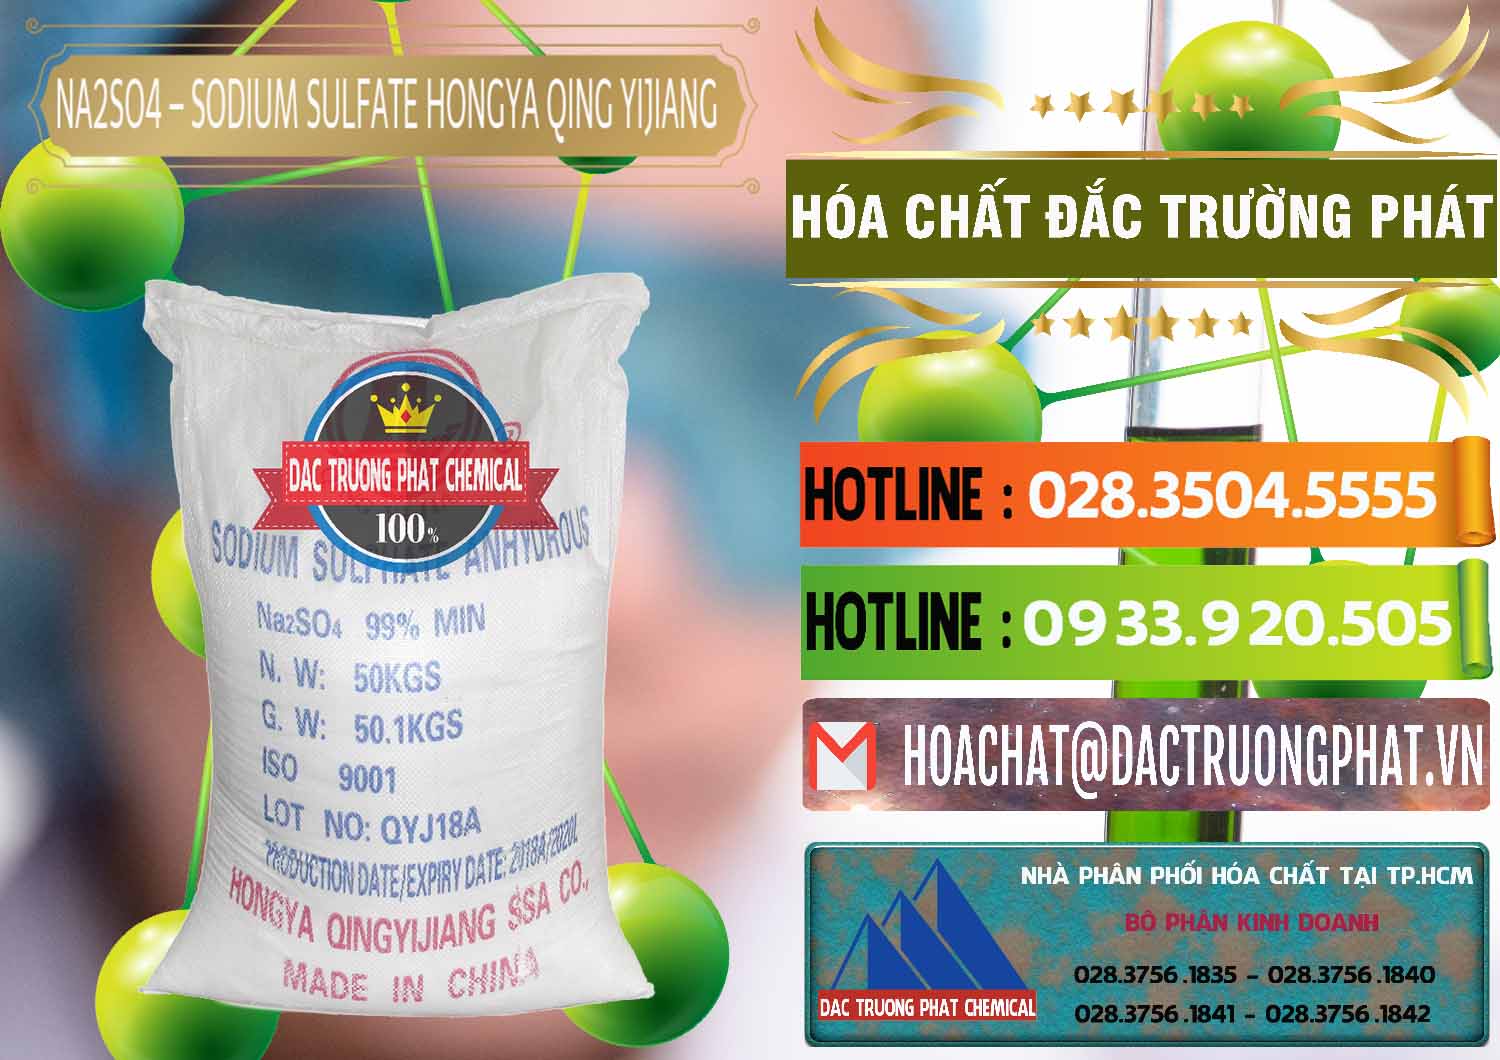 Cty nhập khẩu và bán Sodium Sulphate - Muối Sunfat Na2SO4 Logo Cánh Bườm Hongya Qing Yi Trung Quốc China - 0098 - Nơi chuyên phân phối _ nhập khẩu hóa chất tại TP.HCM - cungcaphoachat.com.vn